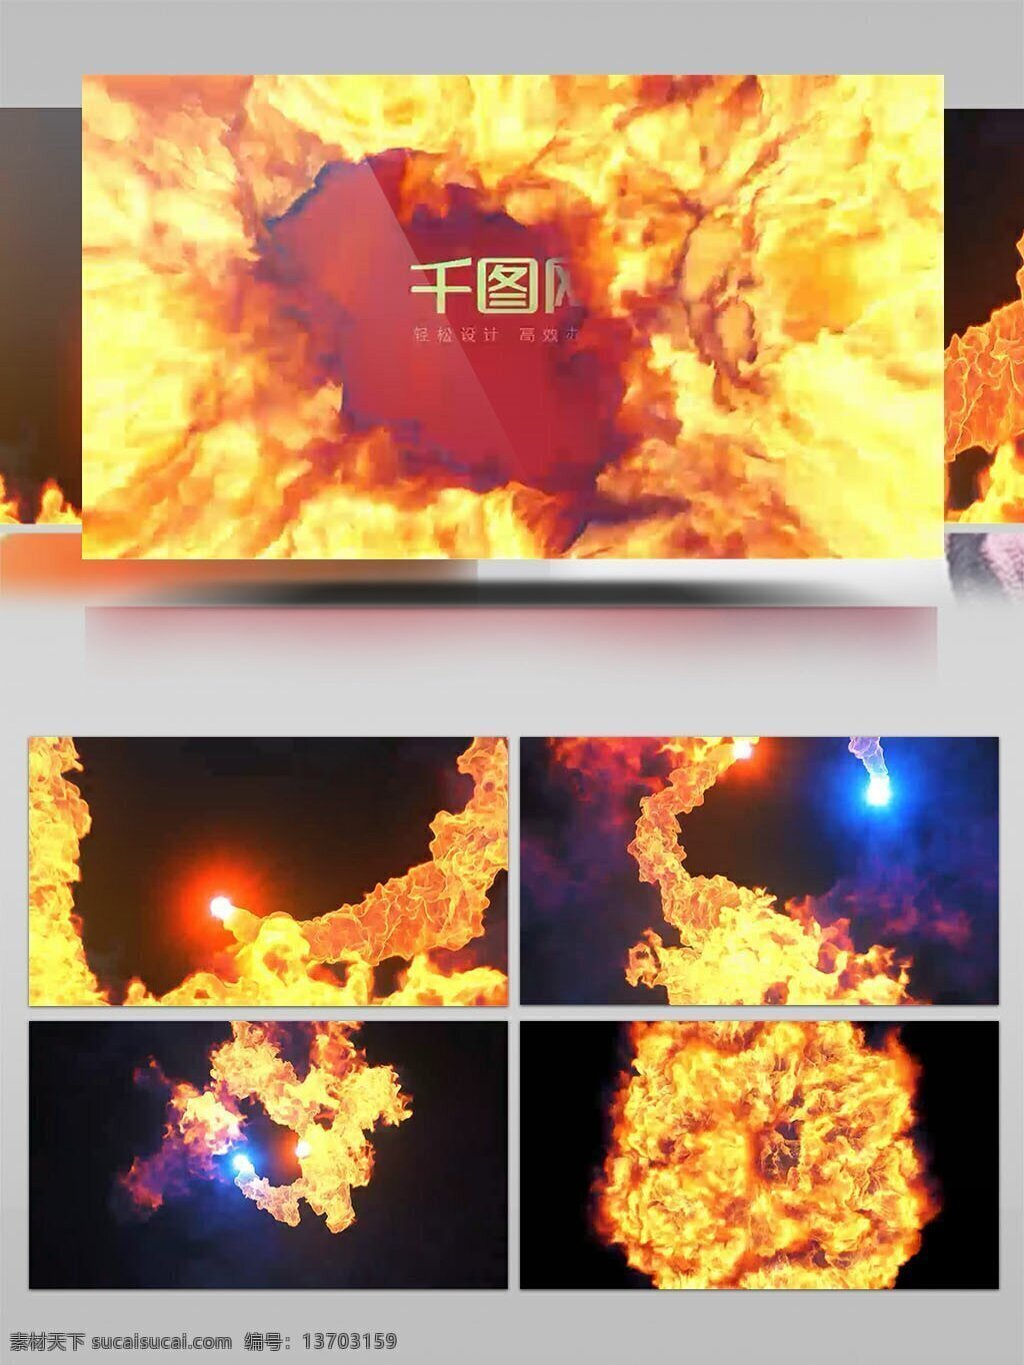 极品 火焰 视频 红色 燃烧 高清视频素材 视频素材 动态视频素材 烈焰